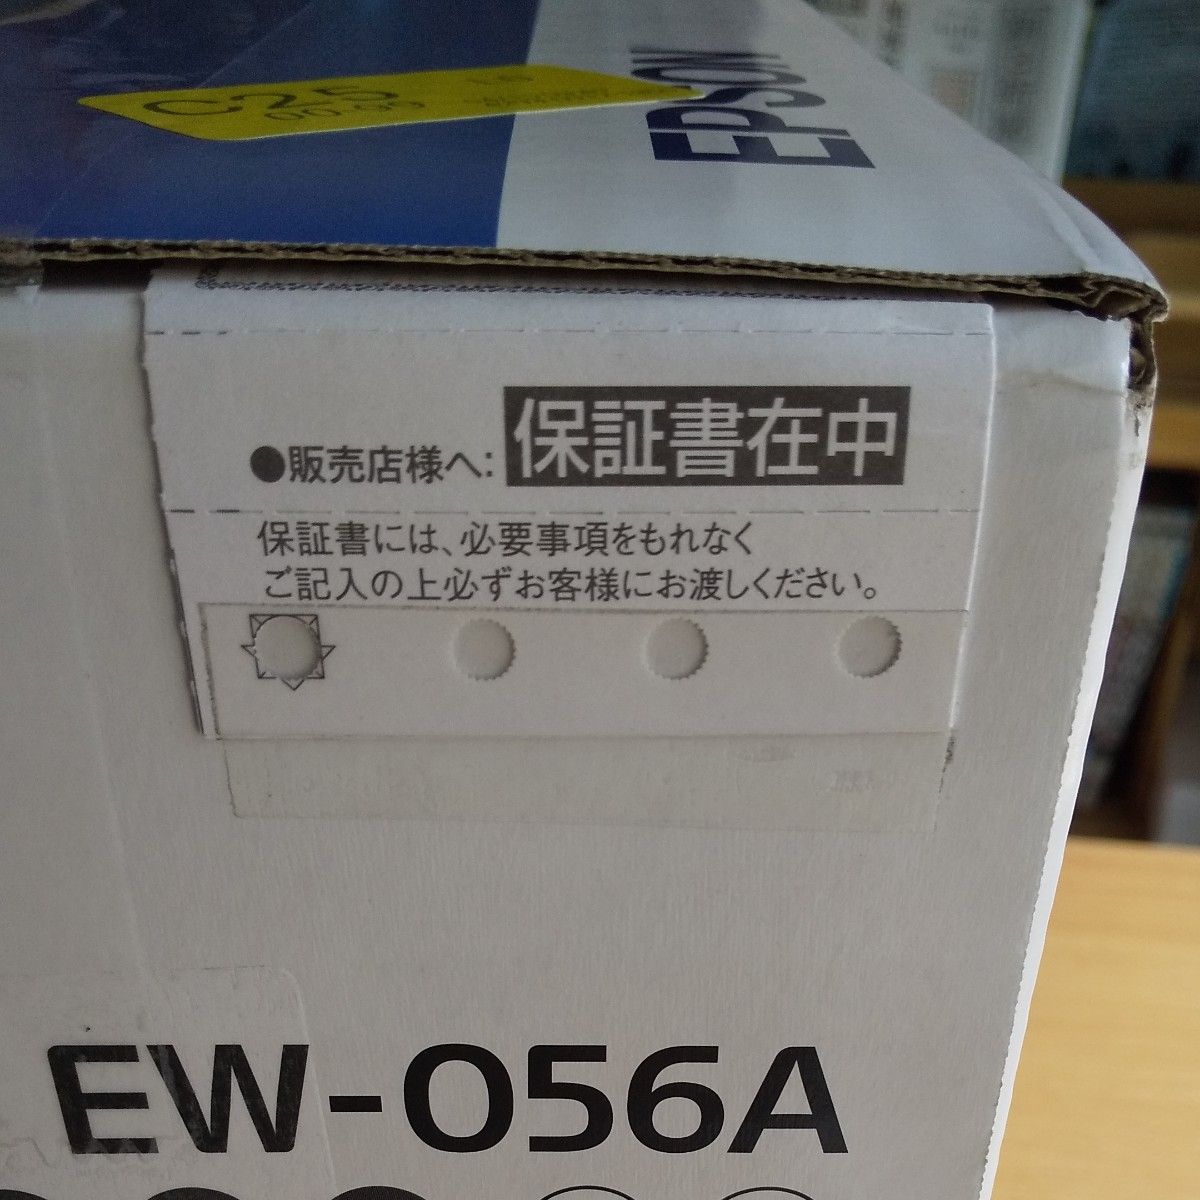 エプソン プリンター カラリオ EW-056A 新品未開封